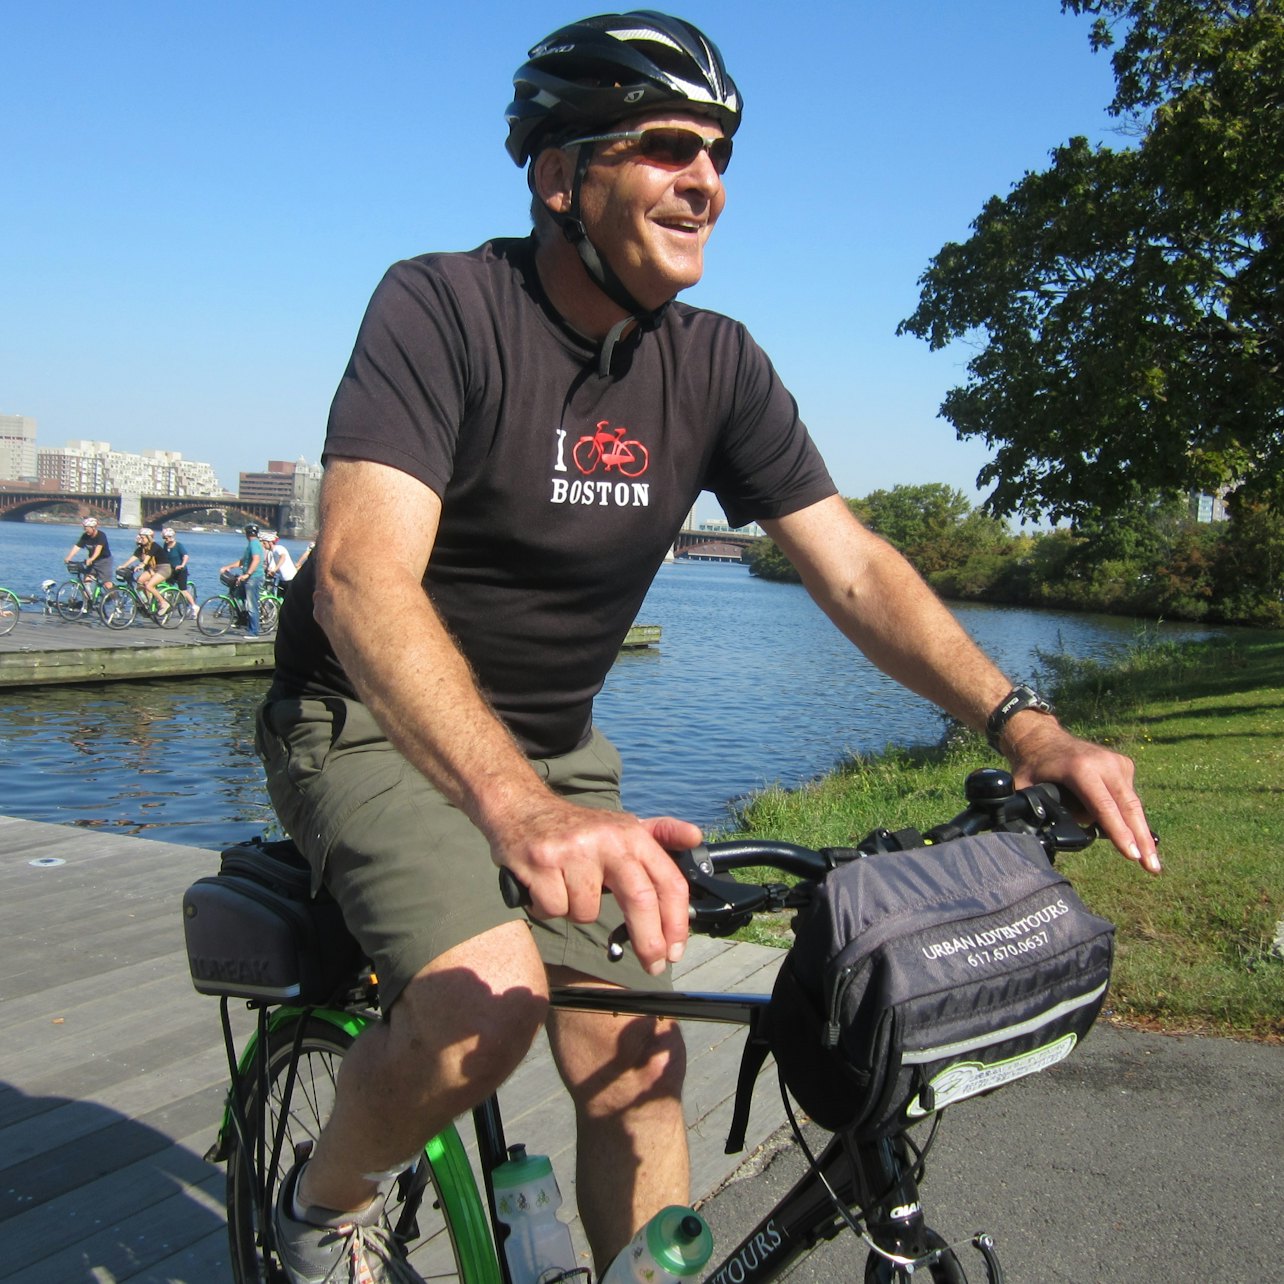 Tour en bici de Boston - Alojamientos en Boston